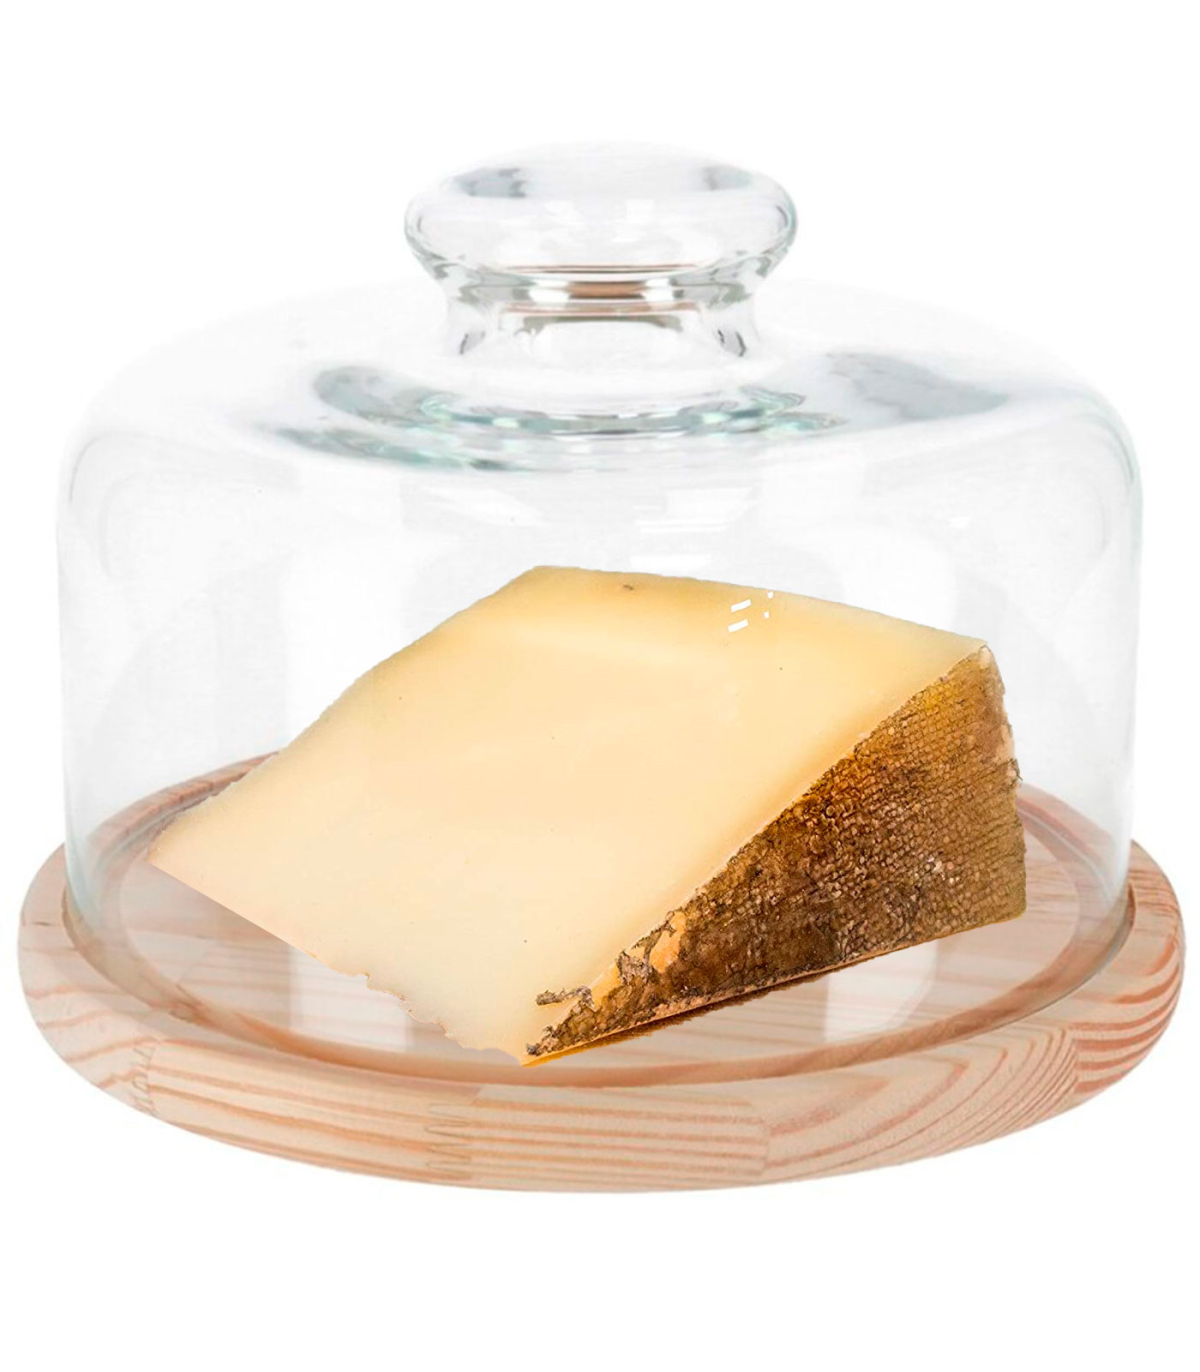 Tradineur - Quesera redonda con tapa de cristal y base de madera,  recipiente para guardar quesos o embutidos, presentación de a - AliExpress